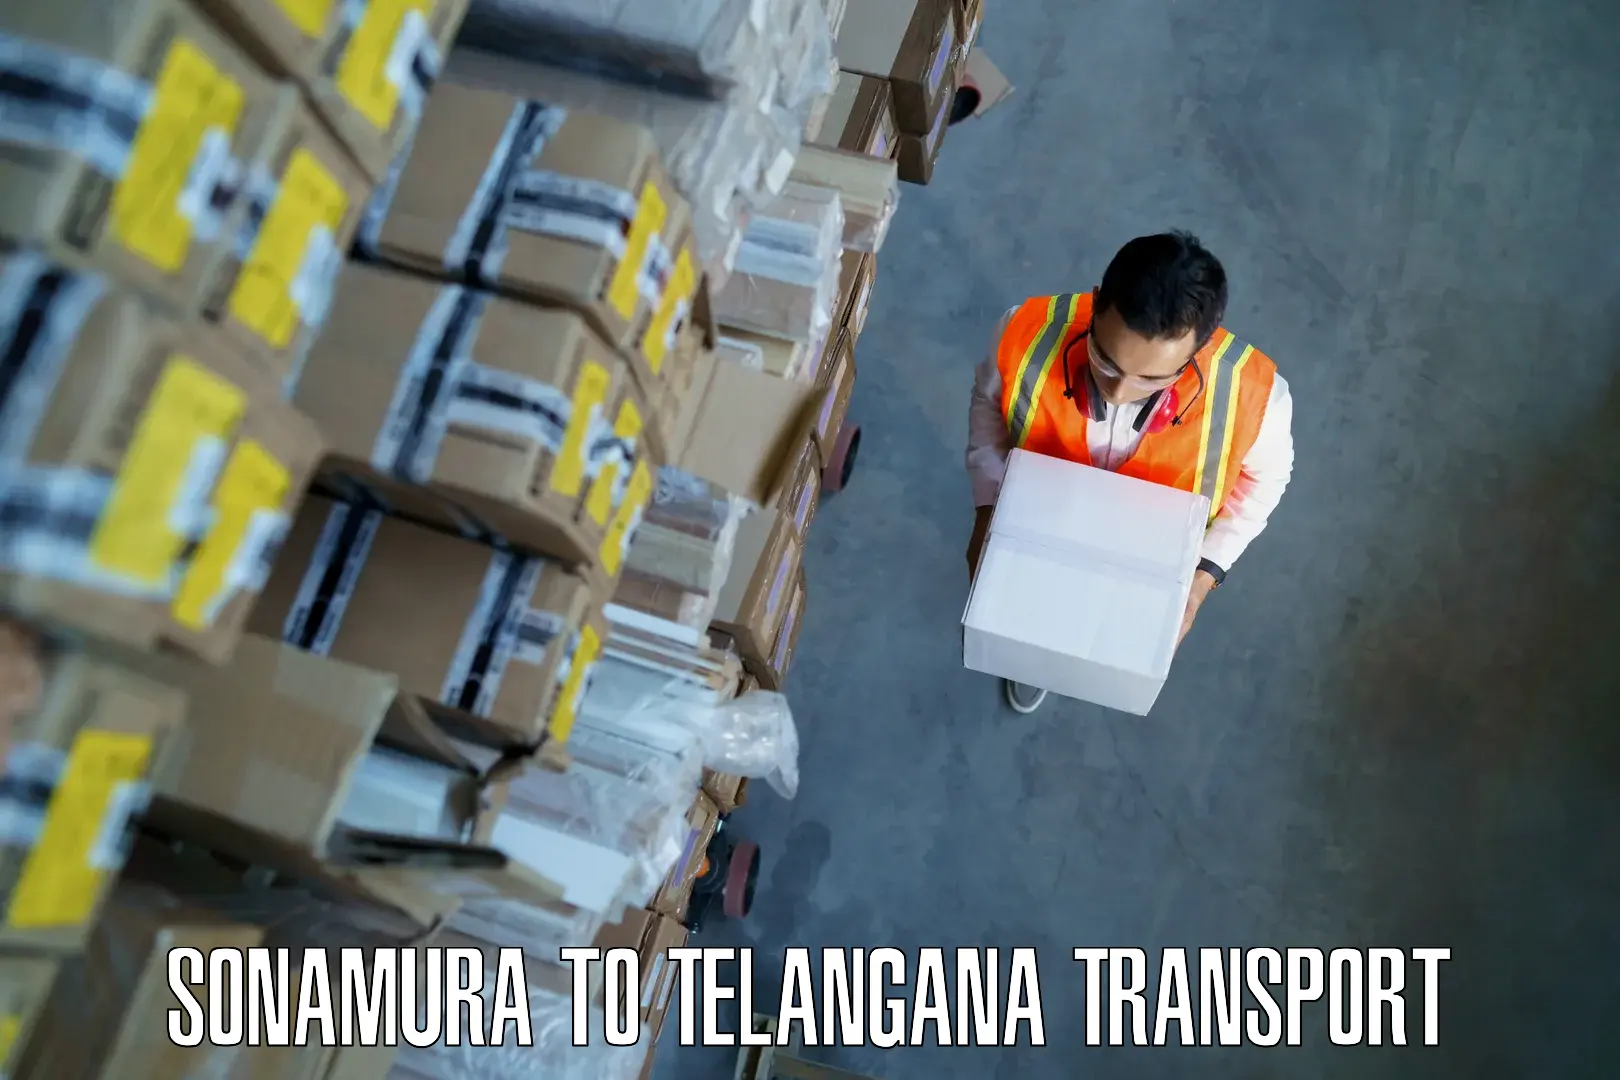 Daily transport service Sonamura to Wyra